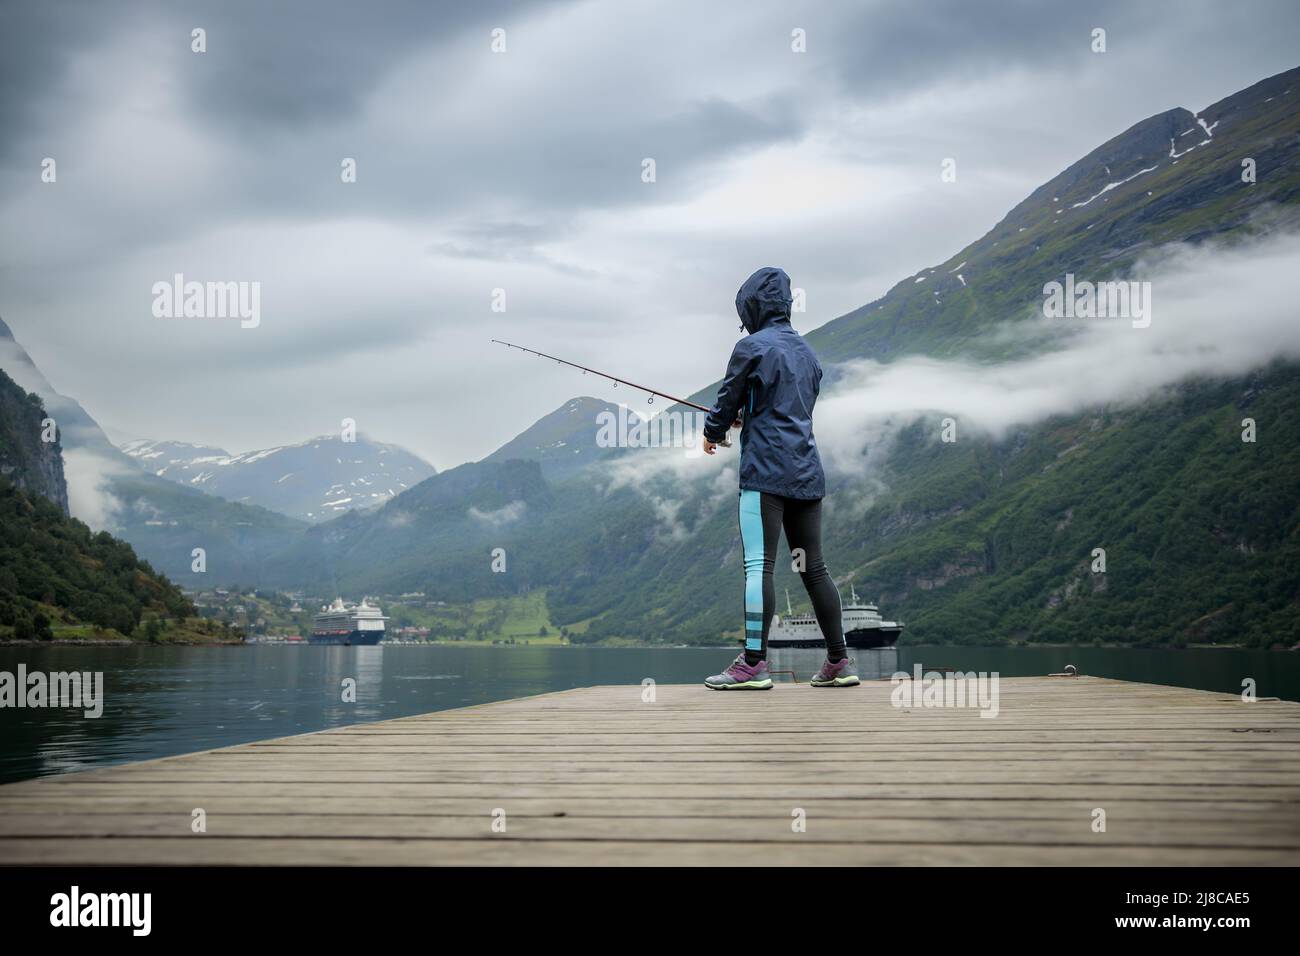 Pêche à la femme sur la canne à pêche spinning en Norvège. La pêche en Norvège est une façon d'embrasser le mode de vie local. D'innombrables lacs et rivières et d'une ampleur Banque D'Images